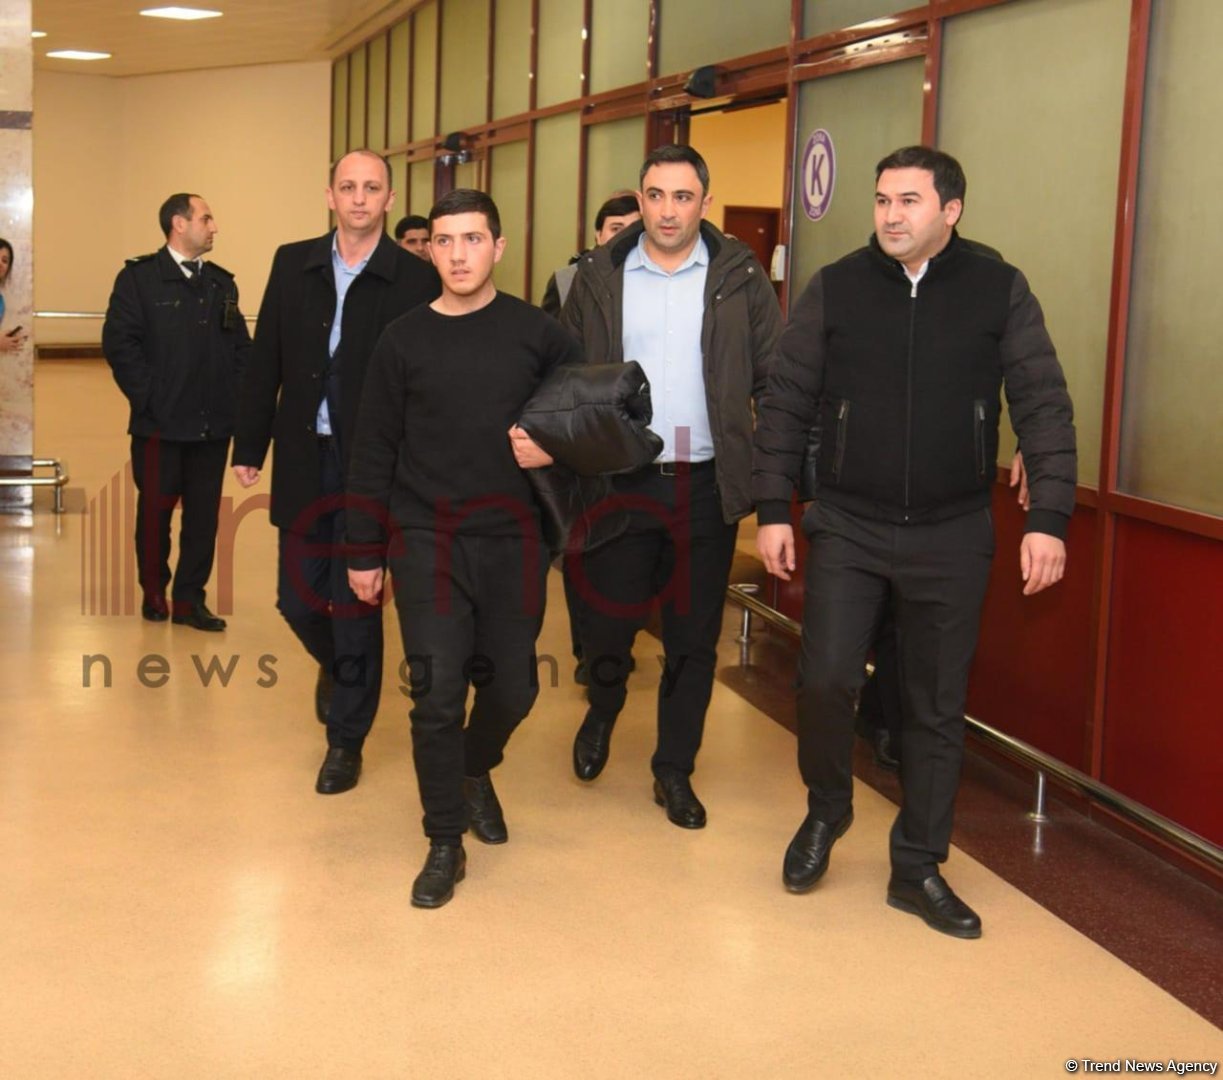 Захваченный армянами азербайджанский военнослужащий доставлен в Баку - ПЕРВЫЕ КАДРЫ (ФОТО/ВИДЕО)